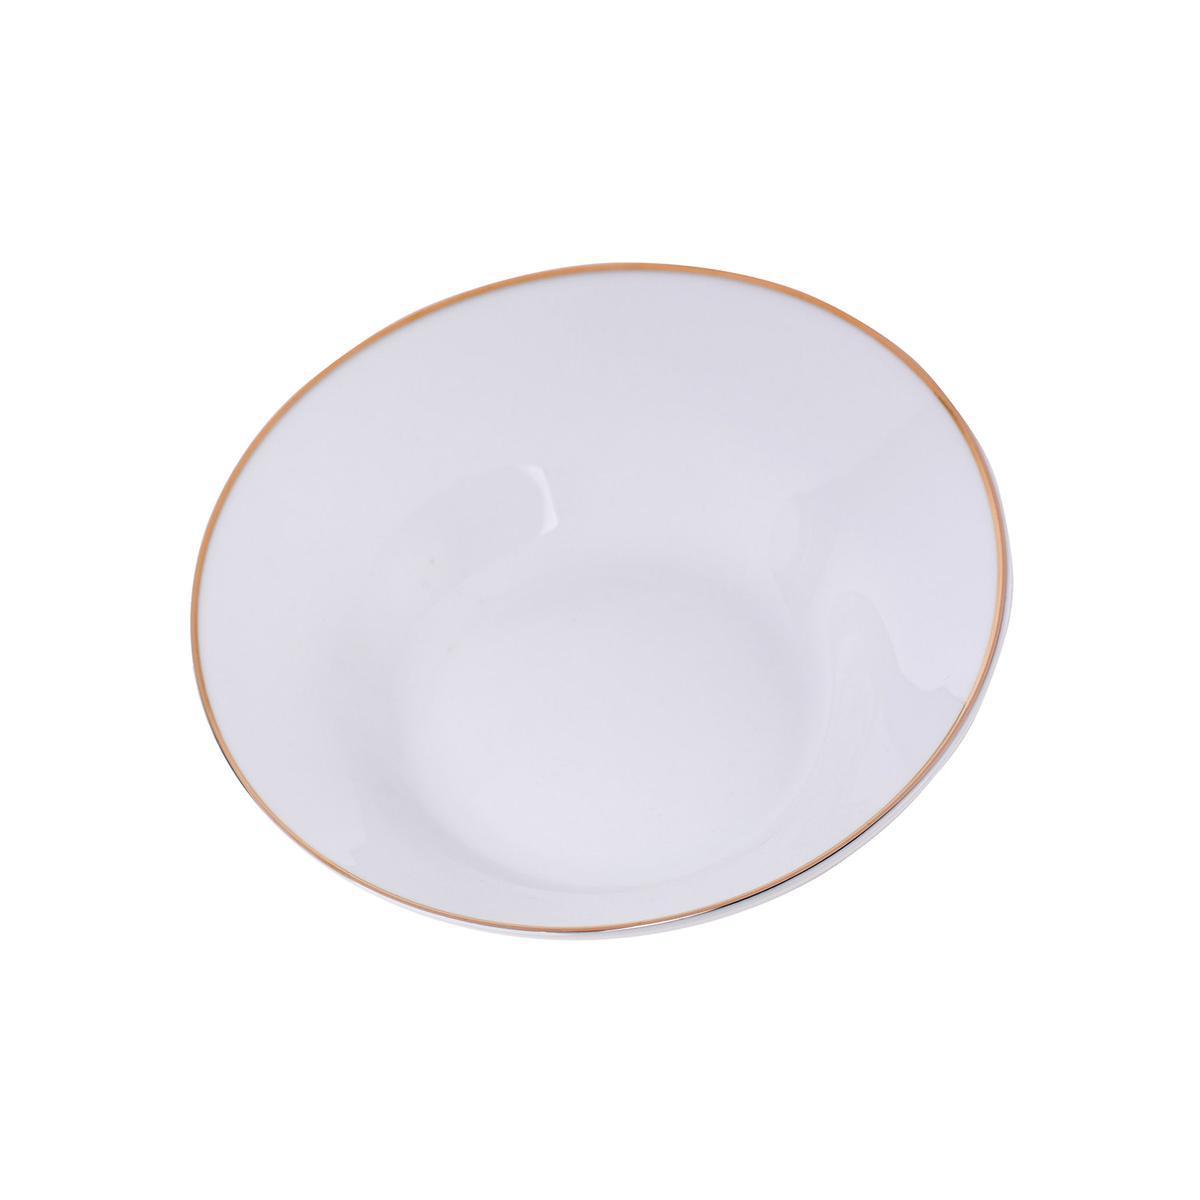 Assiette creuse filet doré - Porcelaine - Diamètre 20 cm - Blanc